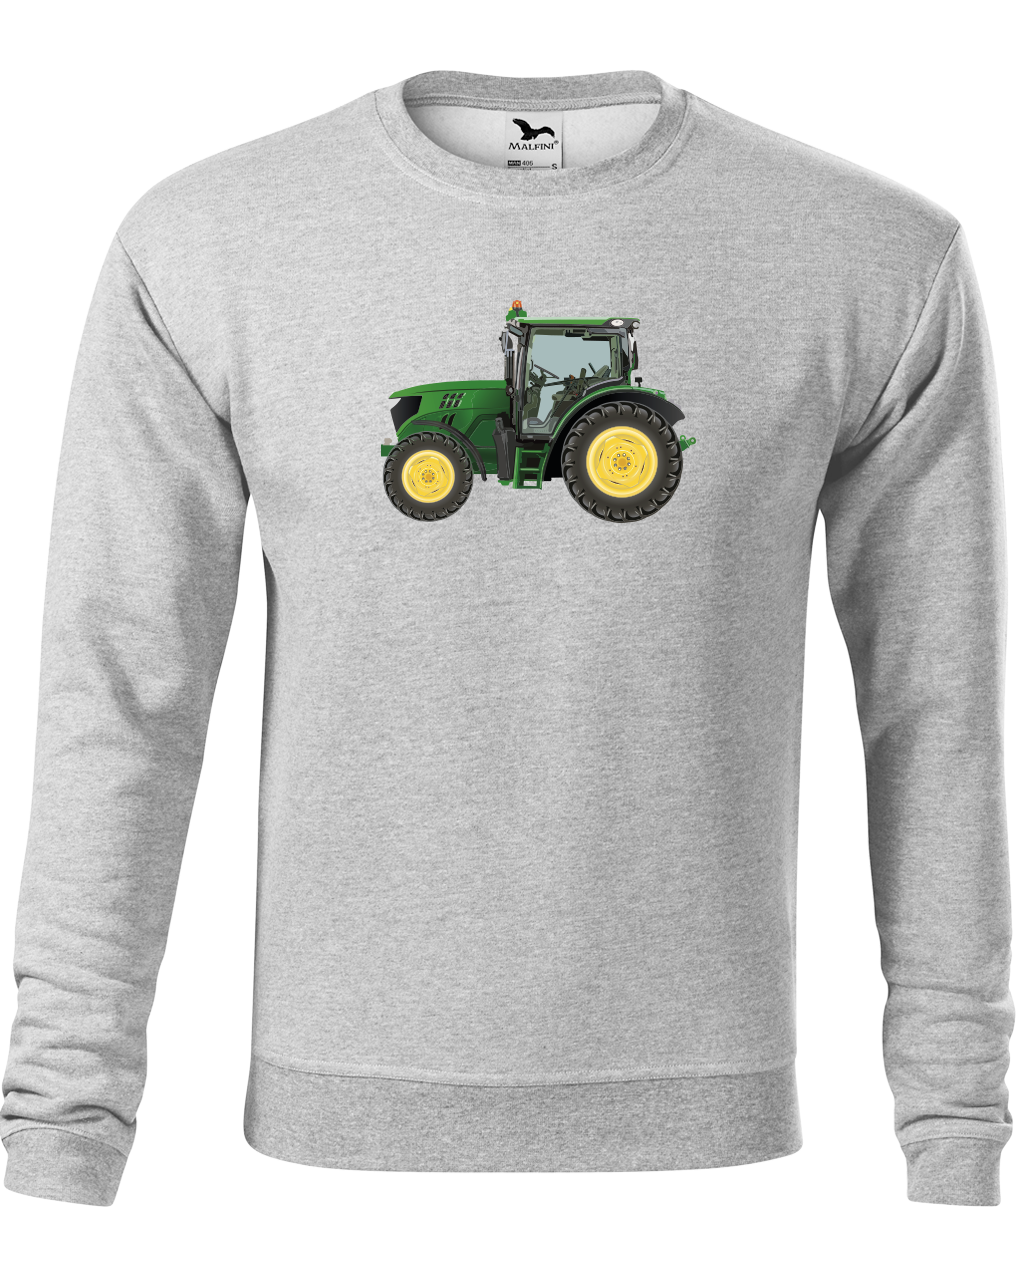 Mikina s traktorem - Zelený traktor Velikost: S, Barva: Světle šedý melír